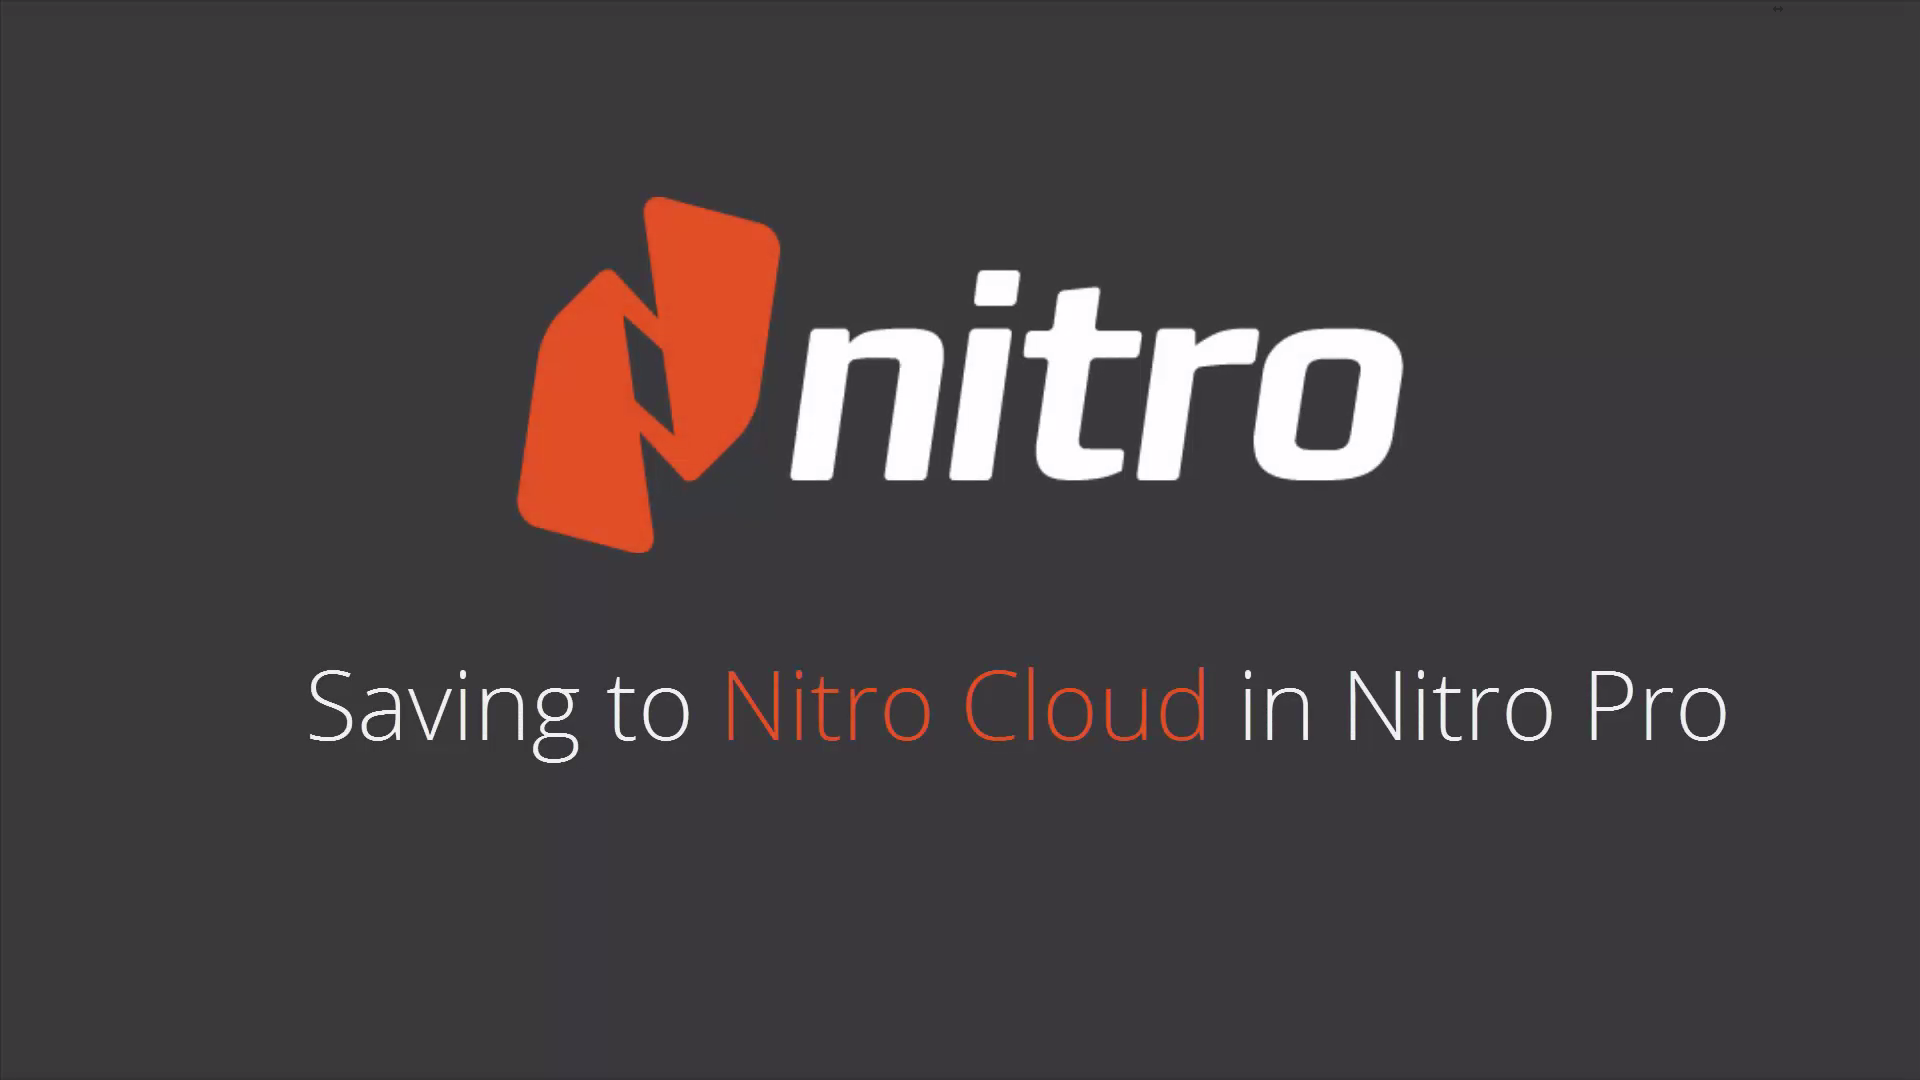 About Nitro